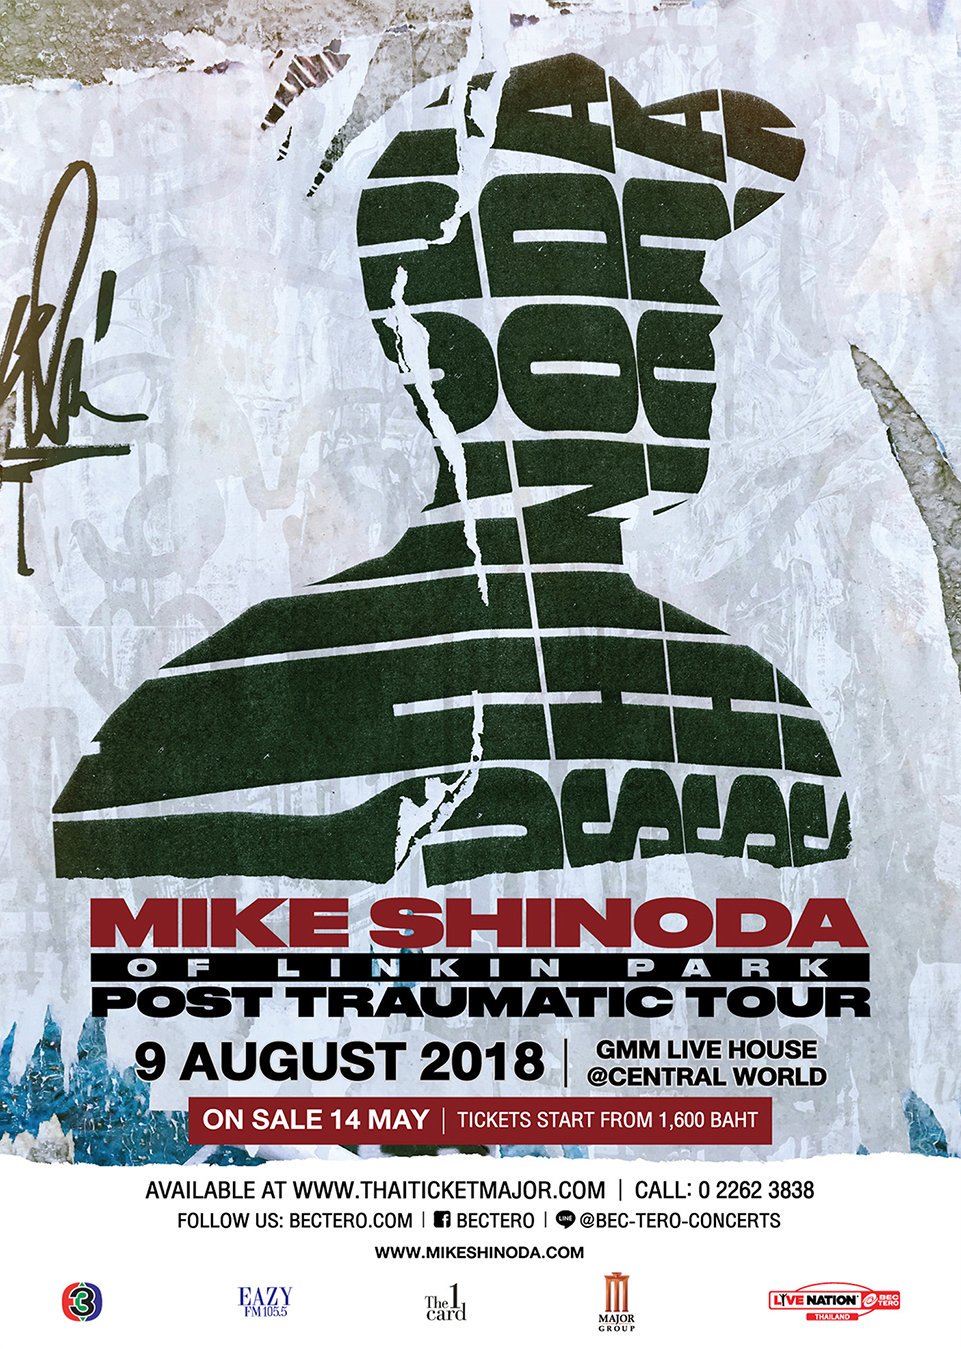 Майк Шинода дал первый сольный концерт с треками Linkin Park, Fort Minor и новыми песнями. - Изображение 1